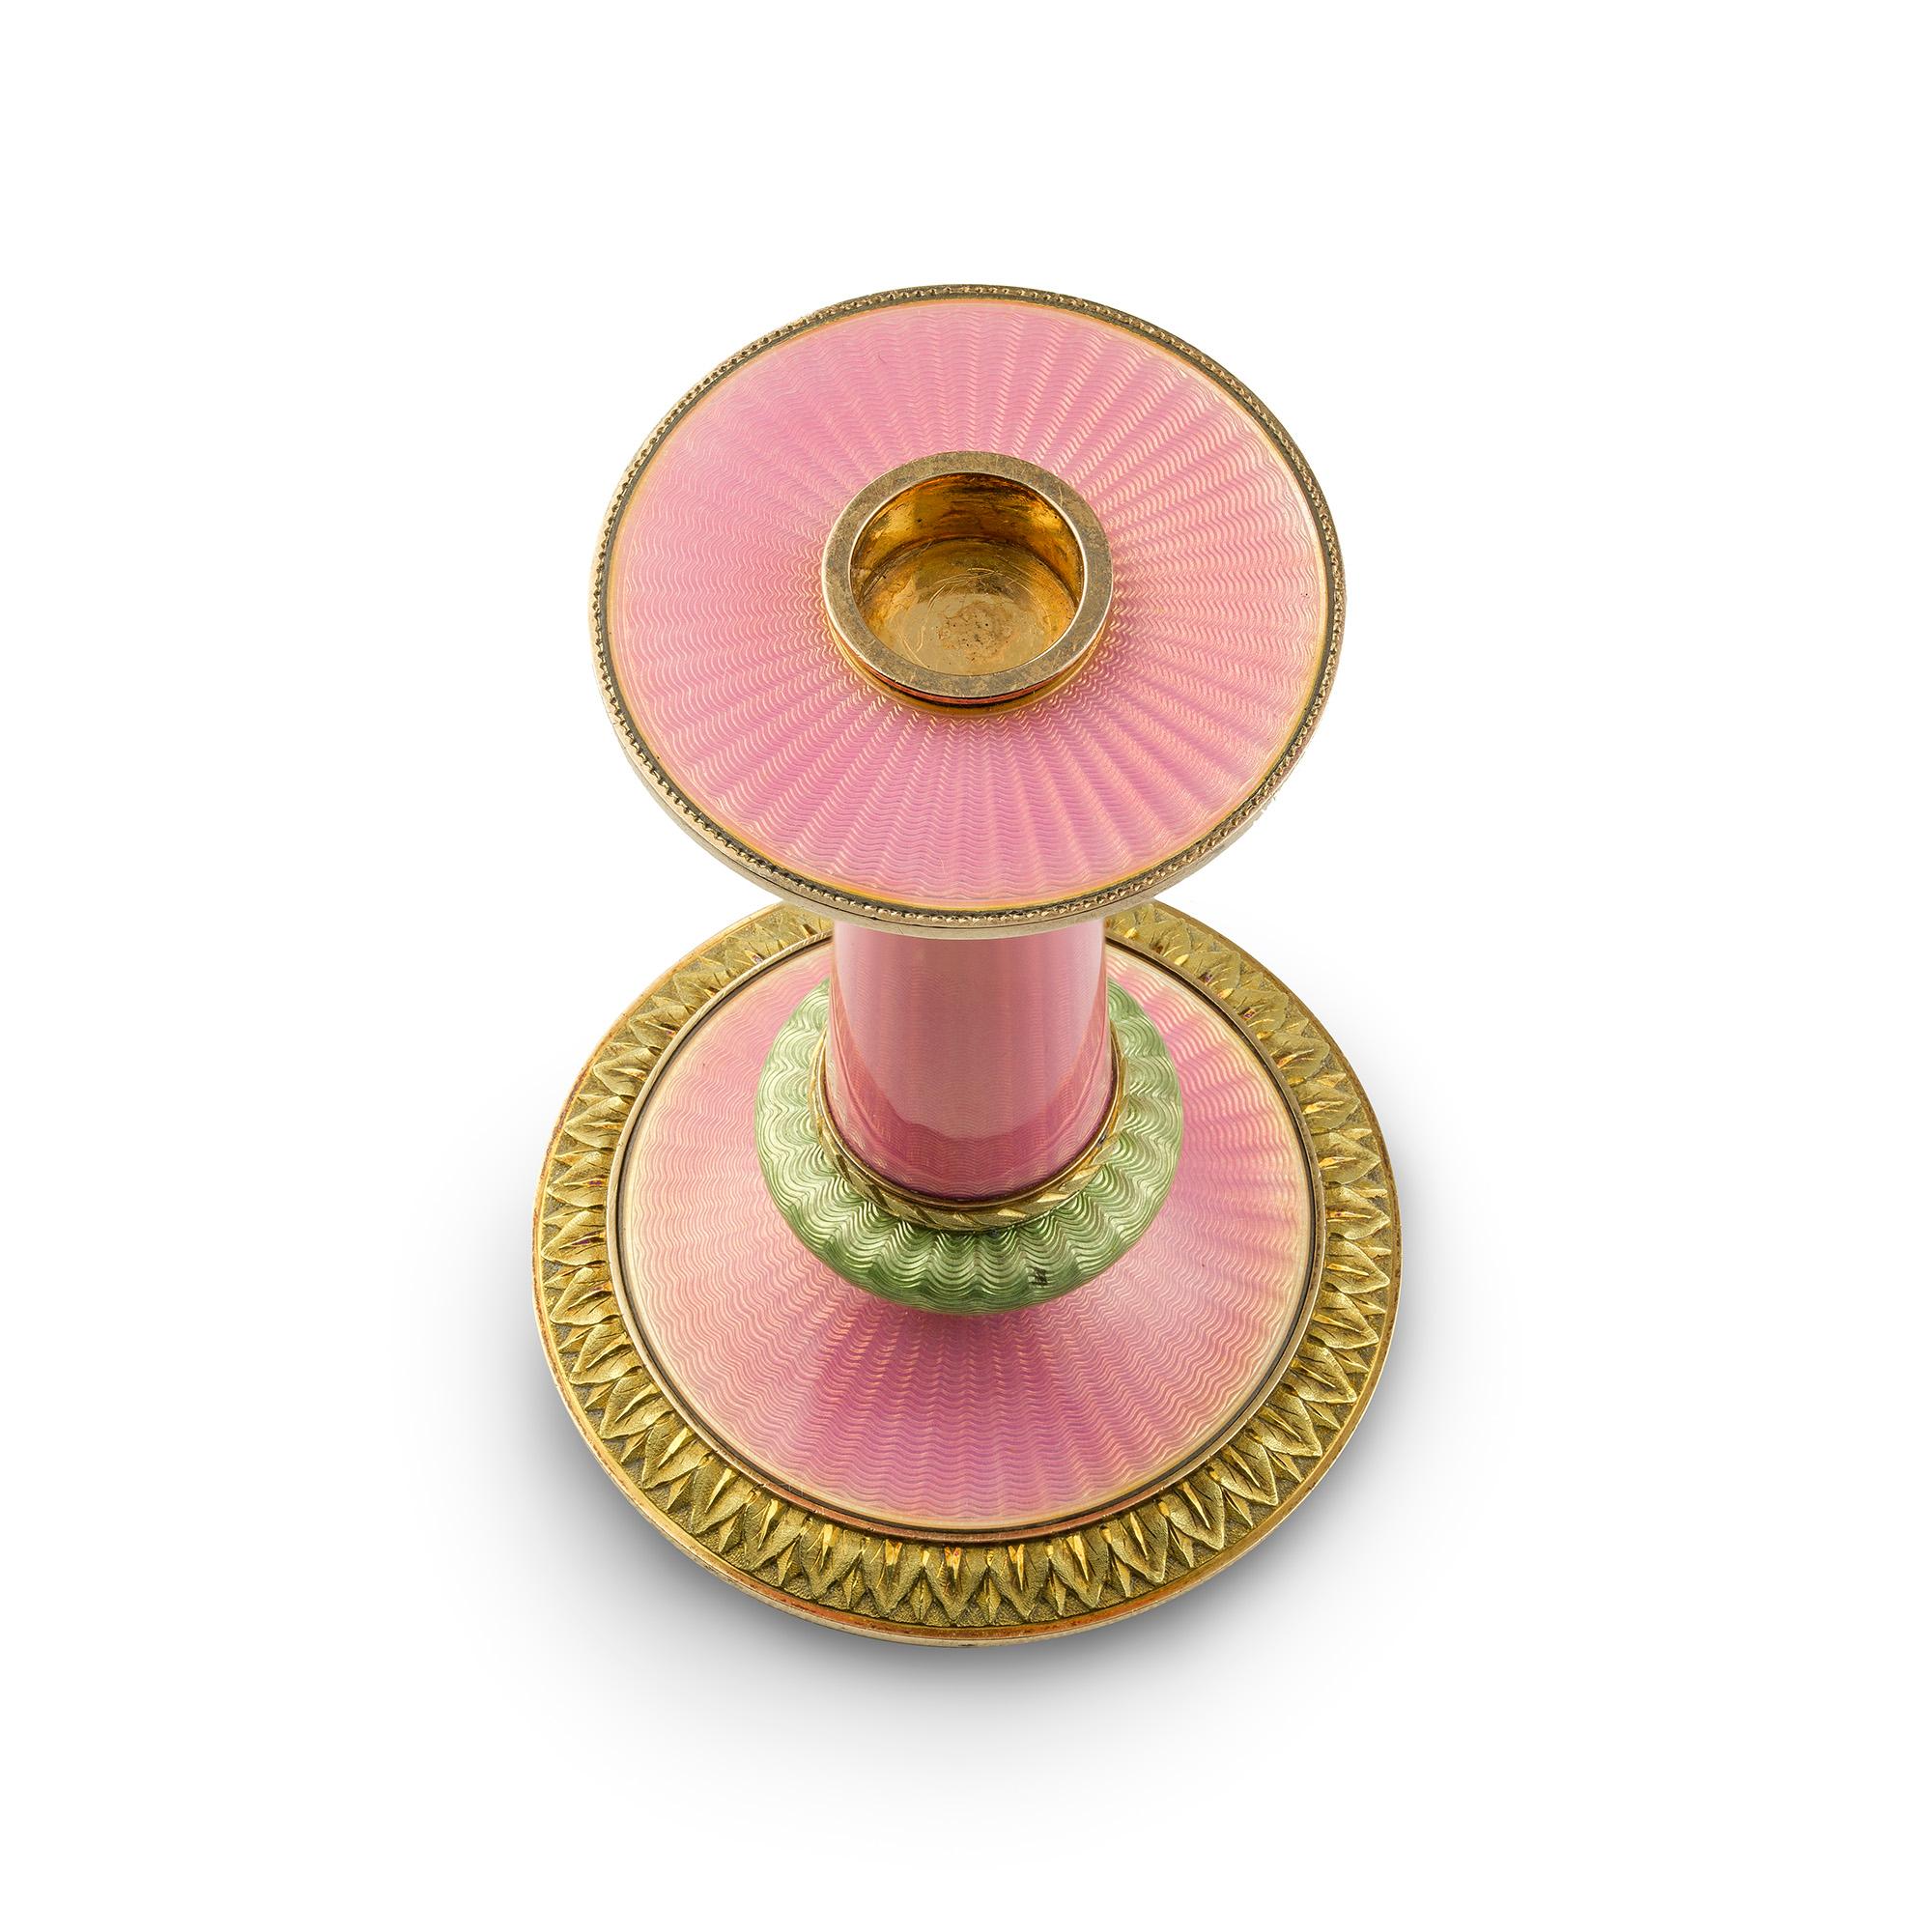 Porte-bougies en émail rose et vert Fabergé par Fabergé', l'applique en émail rose translucide sur un fond guilloché rayonnant, la colonne rose avec deux sections en émail vert dans une bordure jaune ciselée de feuilles de laurier, la base